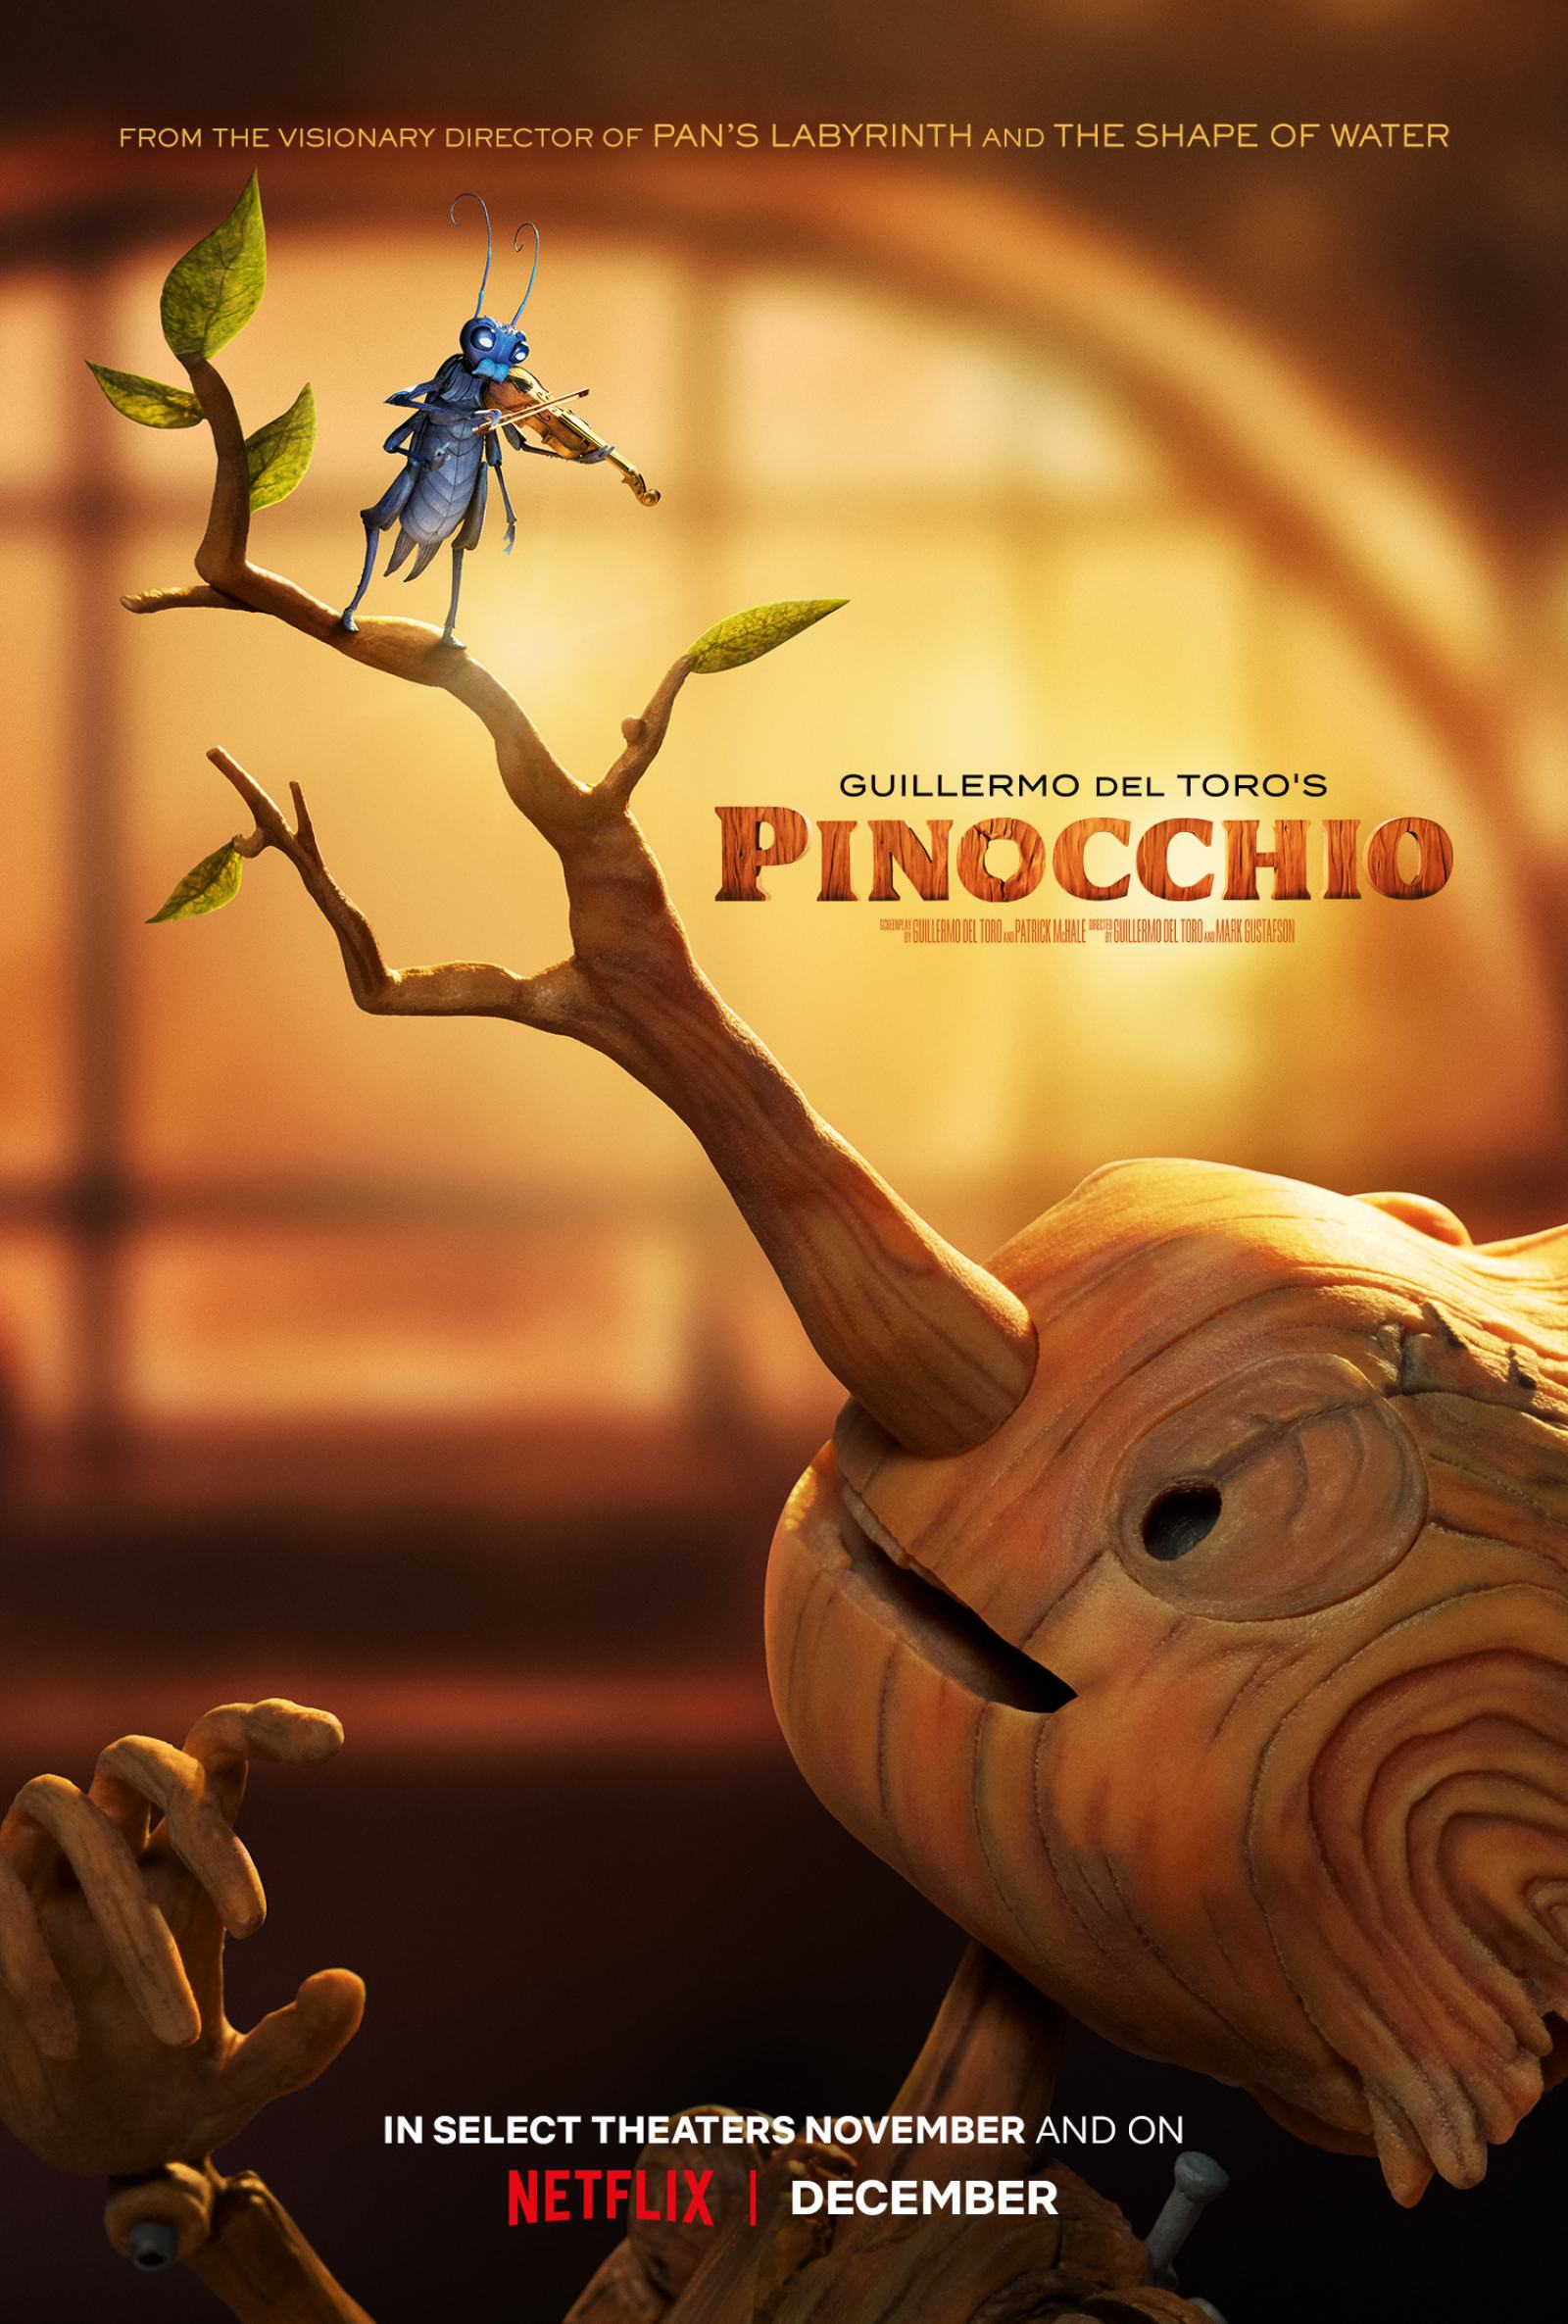 Guillermo del Toro's Pinocchio Poster #1